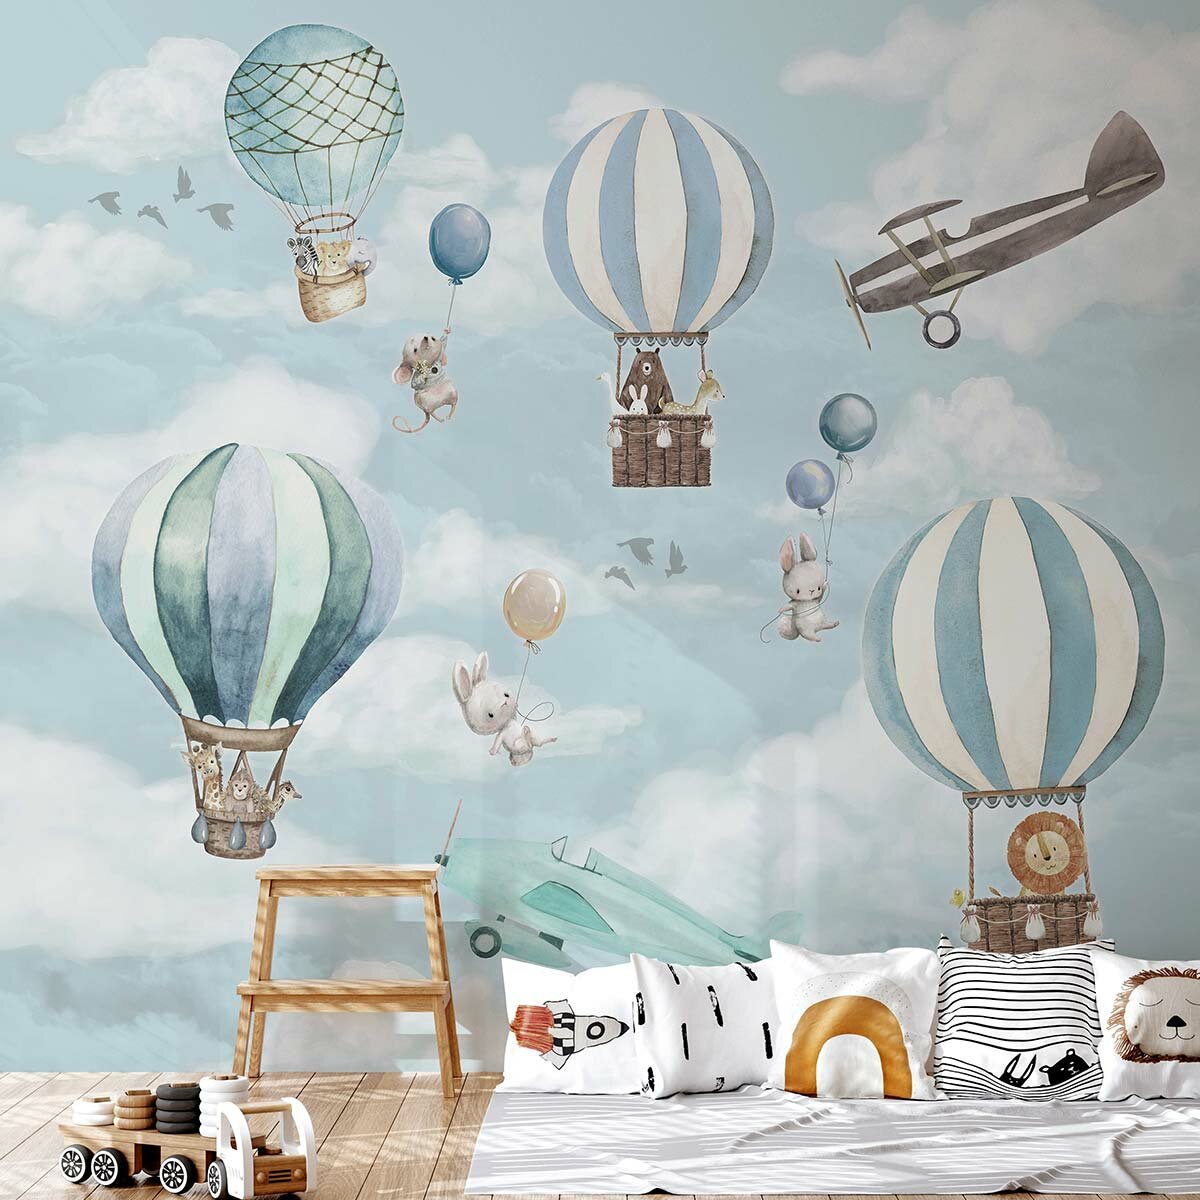 Фотообои детские флизелиновые с виниловым покрытием VEROL "Воздушные шары", 300х283 см, моющиеся обои на стену, декор для дома